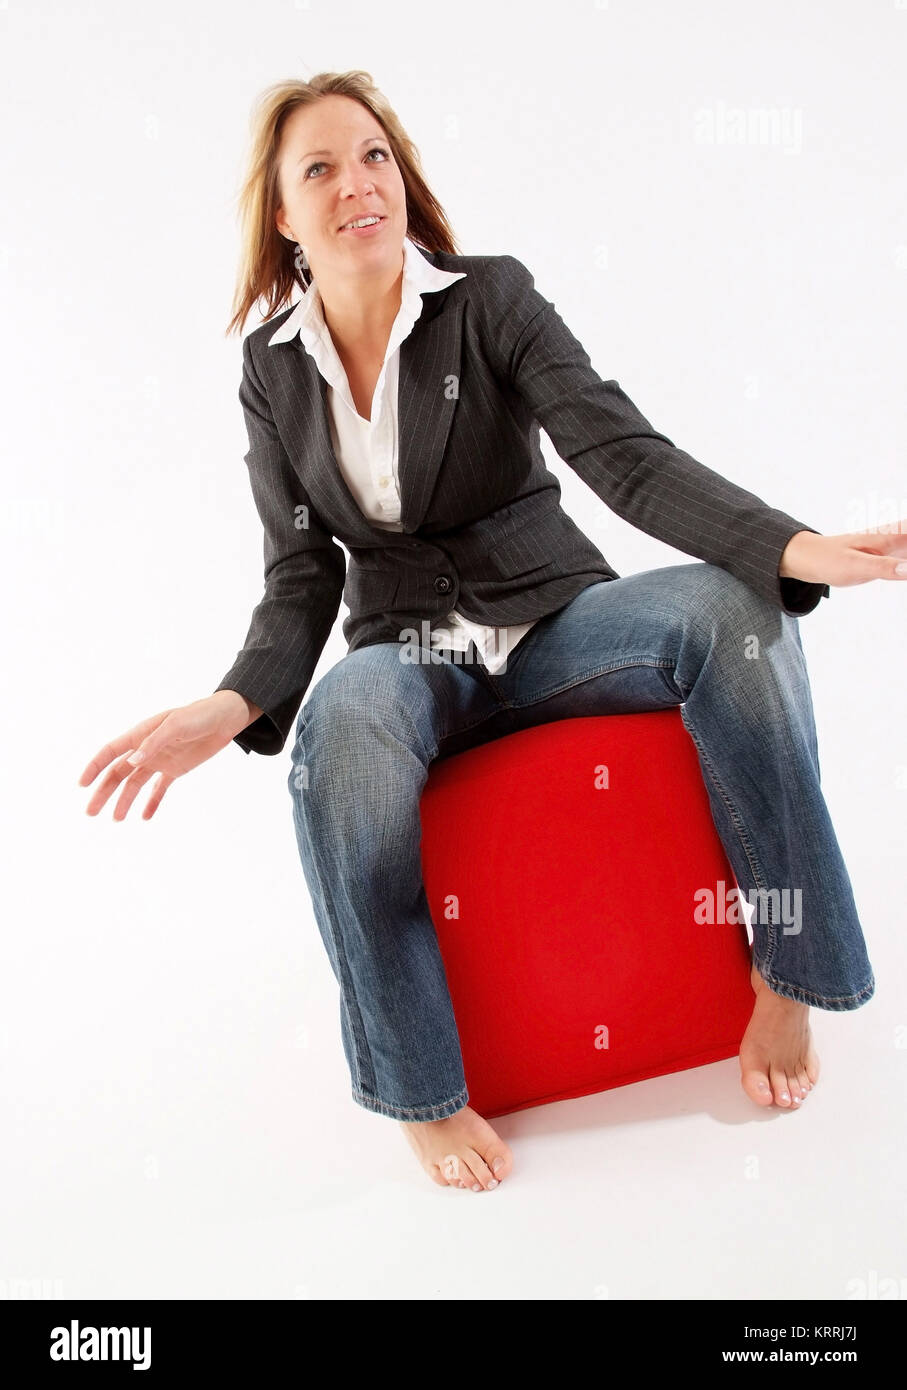 Blonde Frau, 25+, sitzt auf einem roten Stoffwuerfel - giovani, donna bionda in verticale Foto Stock